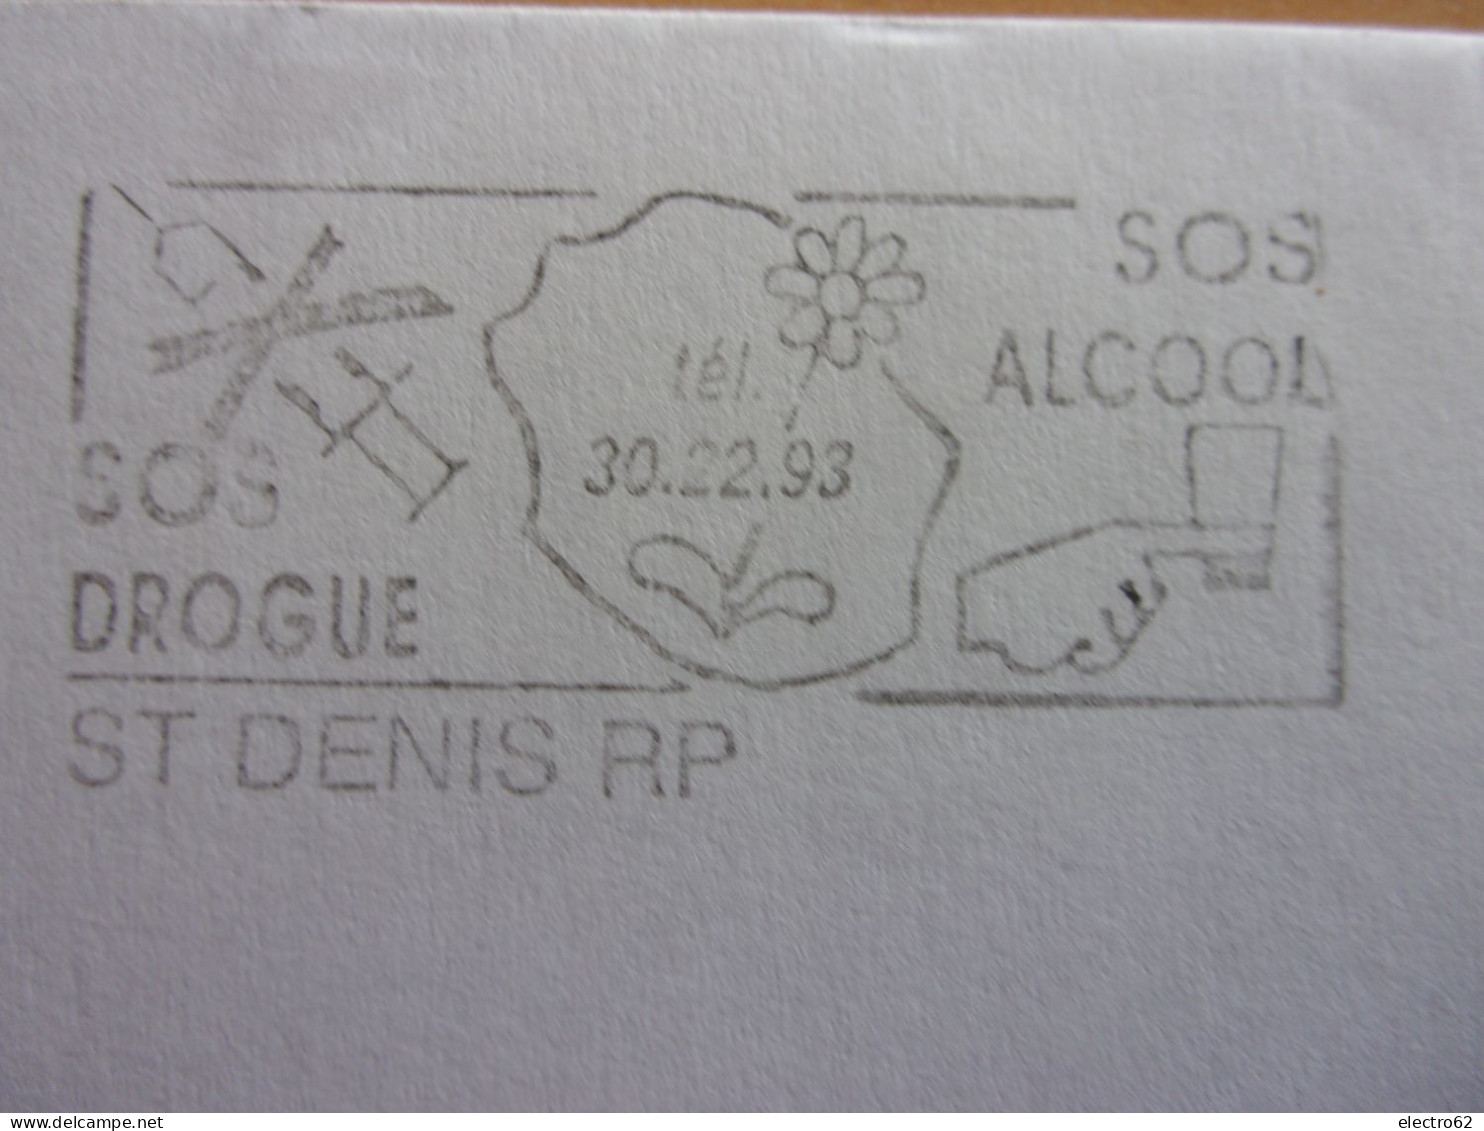 St Denis RP Réunion SOS Drogue Alcool Marianne Du Bicentenaire Seringue Fleur - Drogen